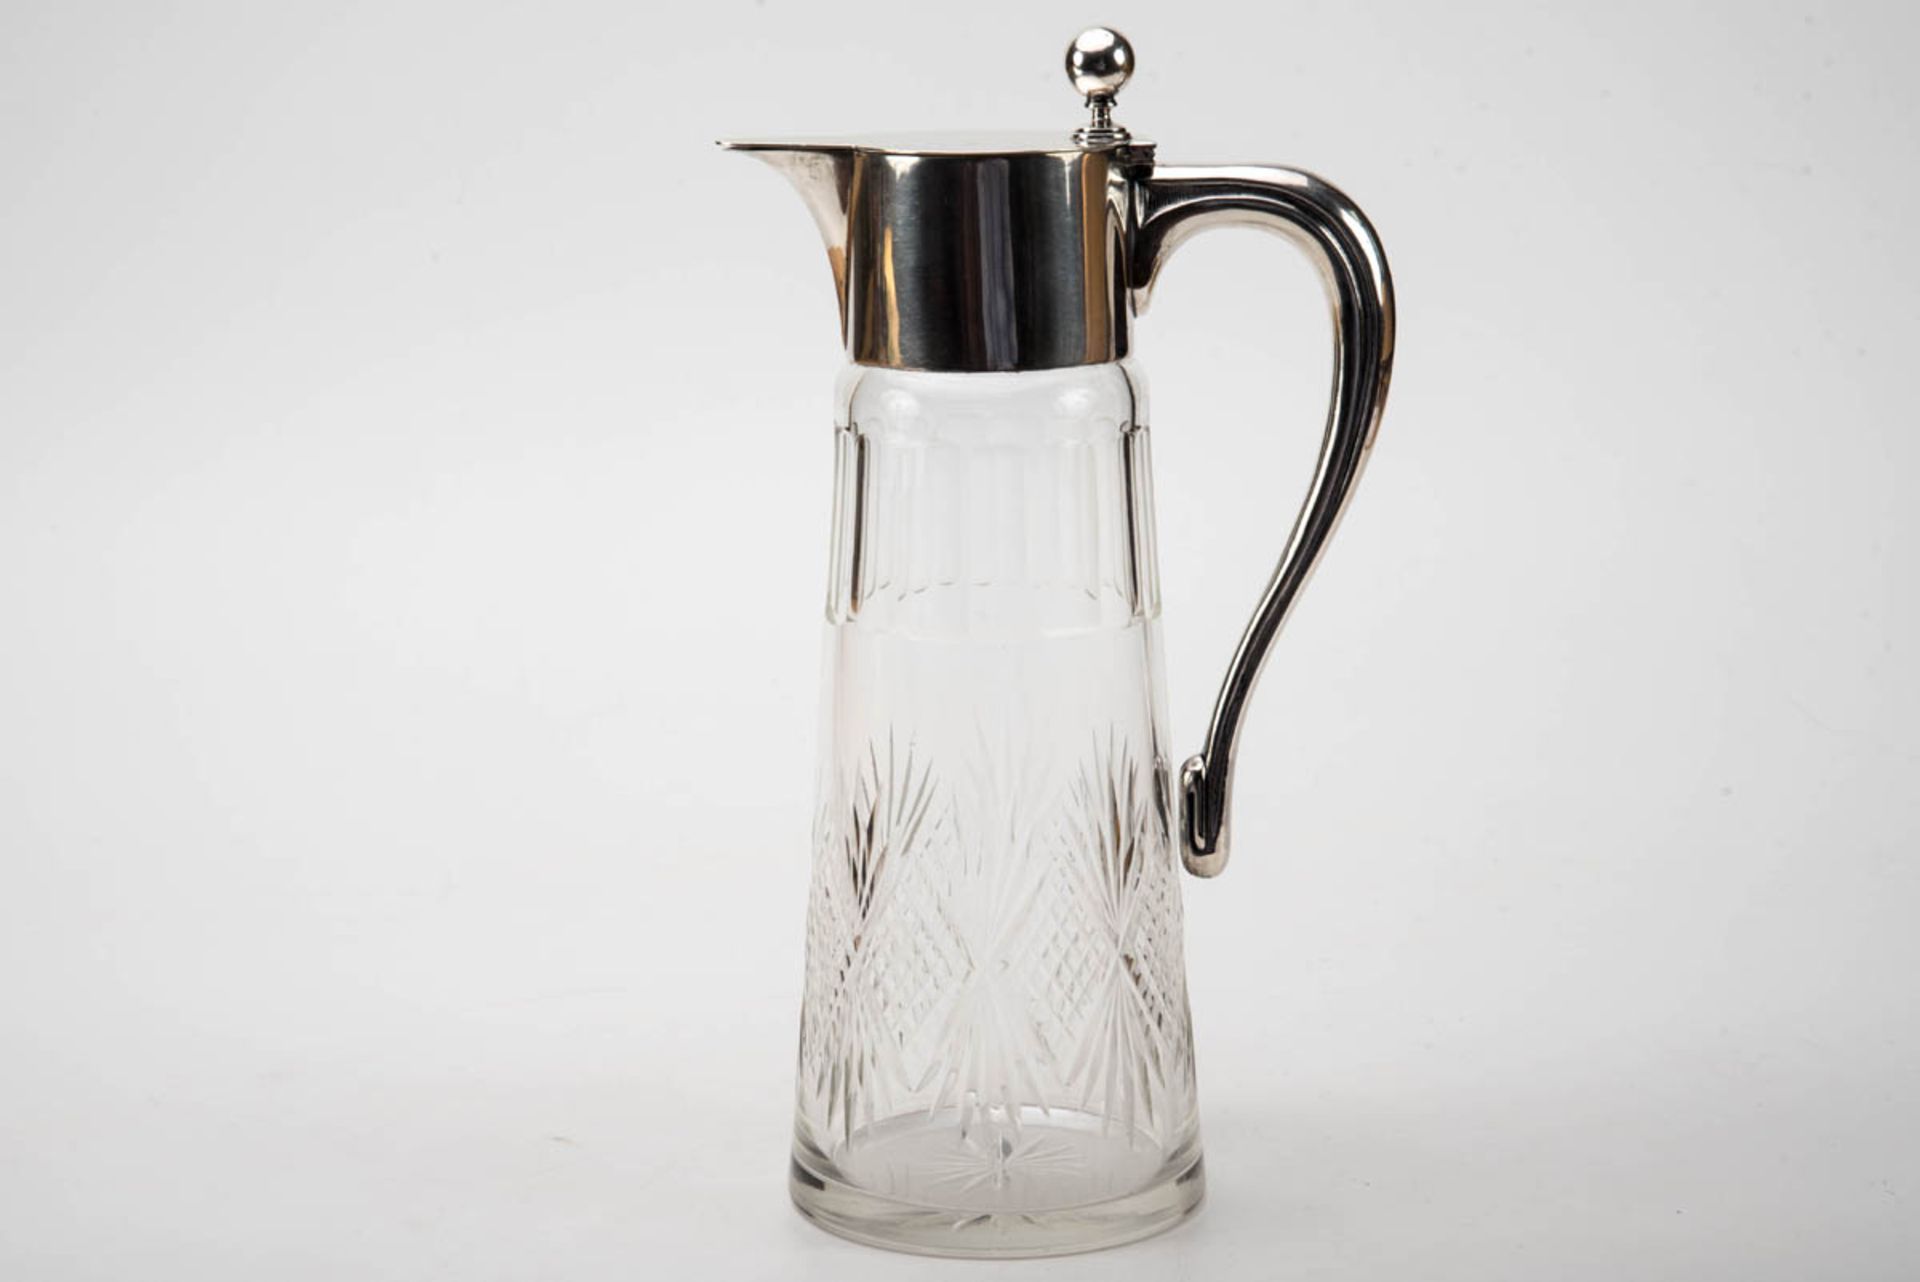 Schenkkanne, um 1930Farbloses Glas mit eingeschliffenen Rauten und Palmetten, Mündungsrand mit